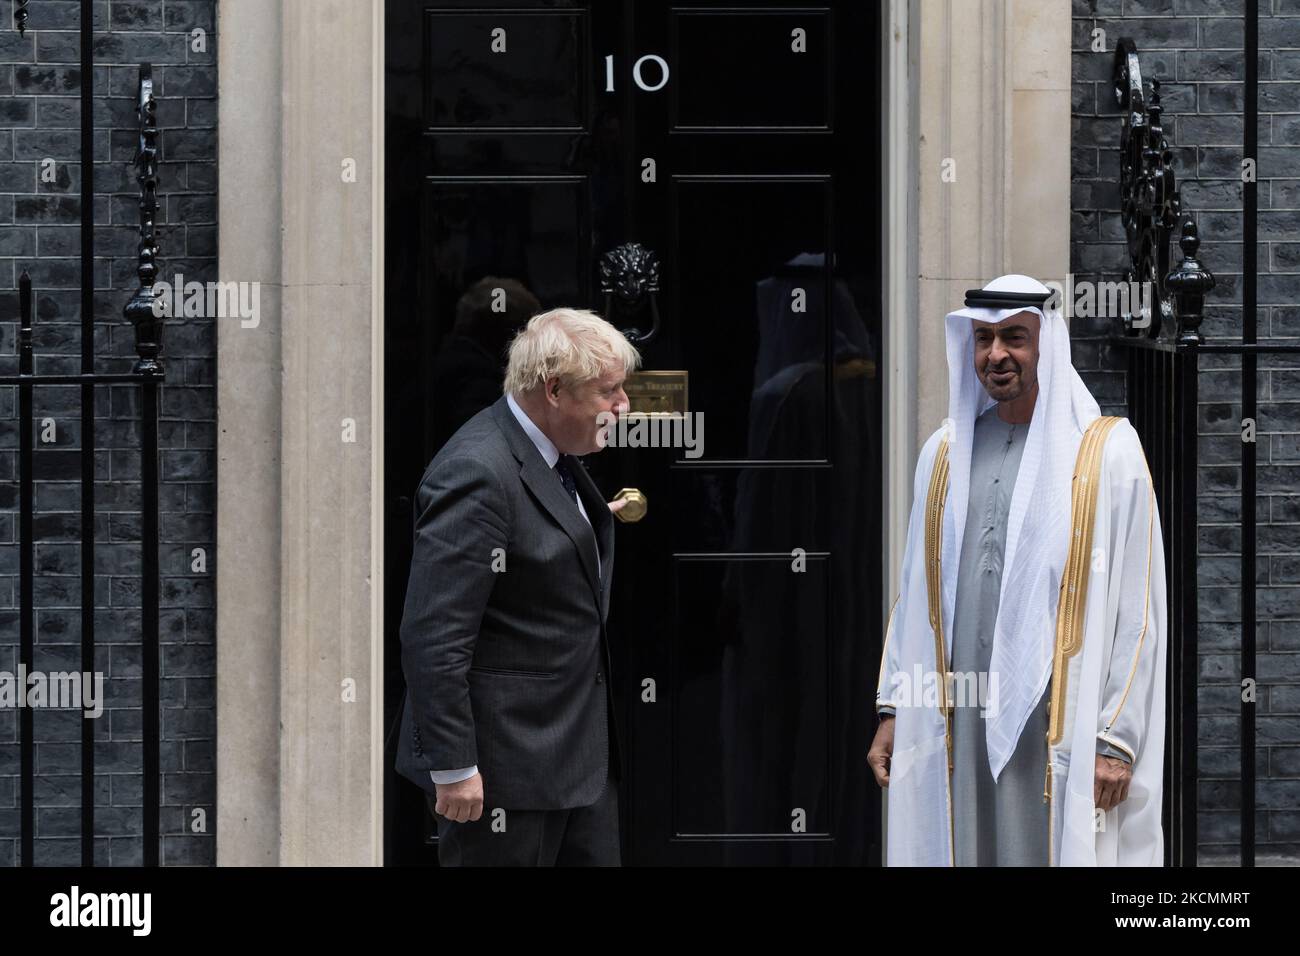 LONDRA, REGNO UNITO - 16 SETTEMBRE 2021: Il primo ministro britannico Boris Johnson (L) accoglie lo sceicco Mohammed bin Zayed al Nahyan (R), principe ereditario dell'emirato di Abu Dhabi e vice comandante supremo delle forze armate degli Emirati Arabi Uniti, al di fuori di 10 Downing Street in vista dei colloqui bilaterali, il 16 settembre 2021 a Londra, Inghilterra. (Foto di Wiktor Szymanowicz/NurPhoto) Foto Stock